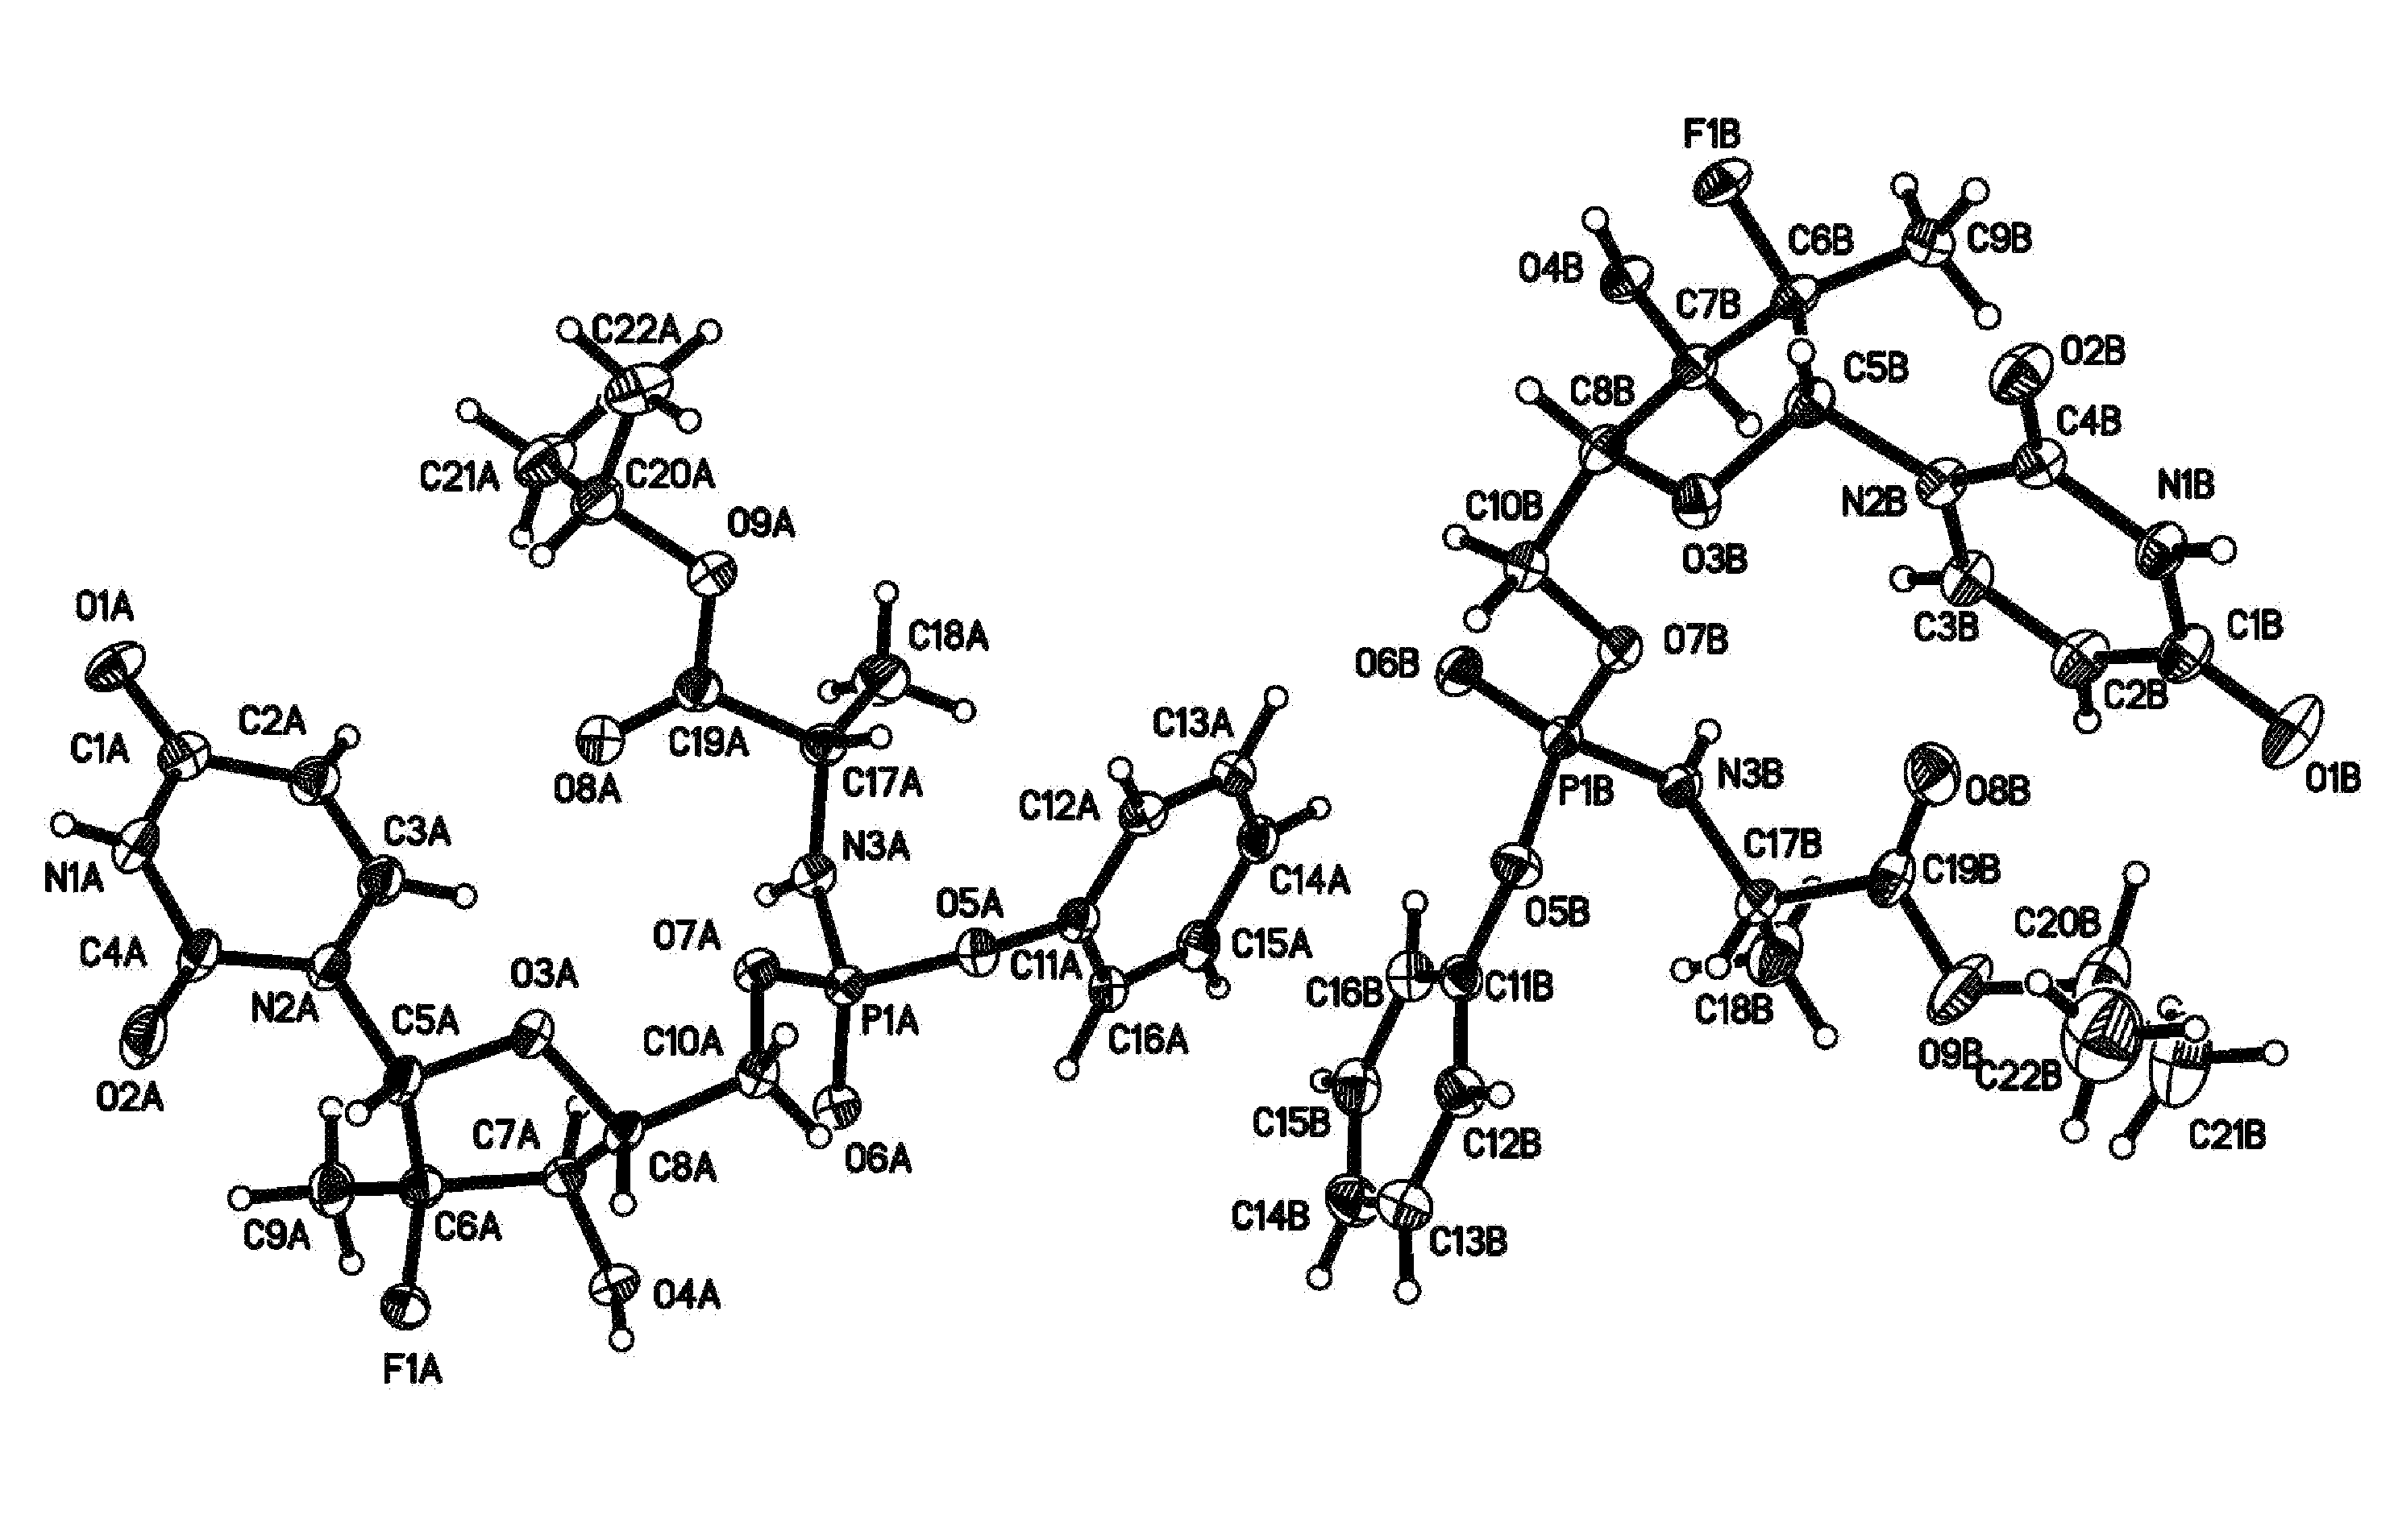 Nucleoside phosphoramidates